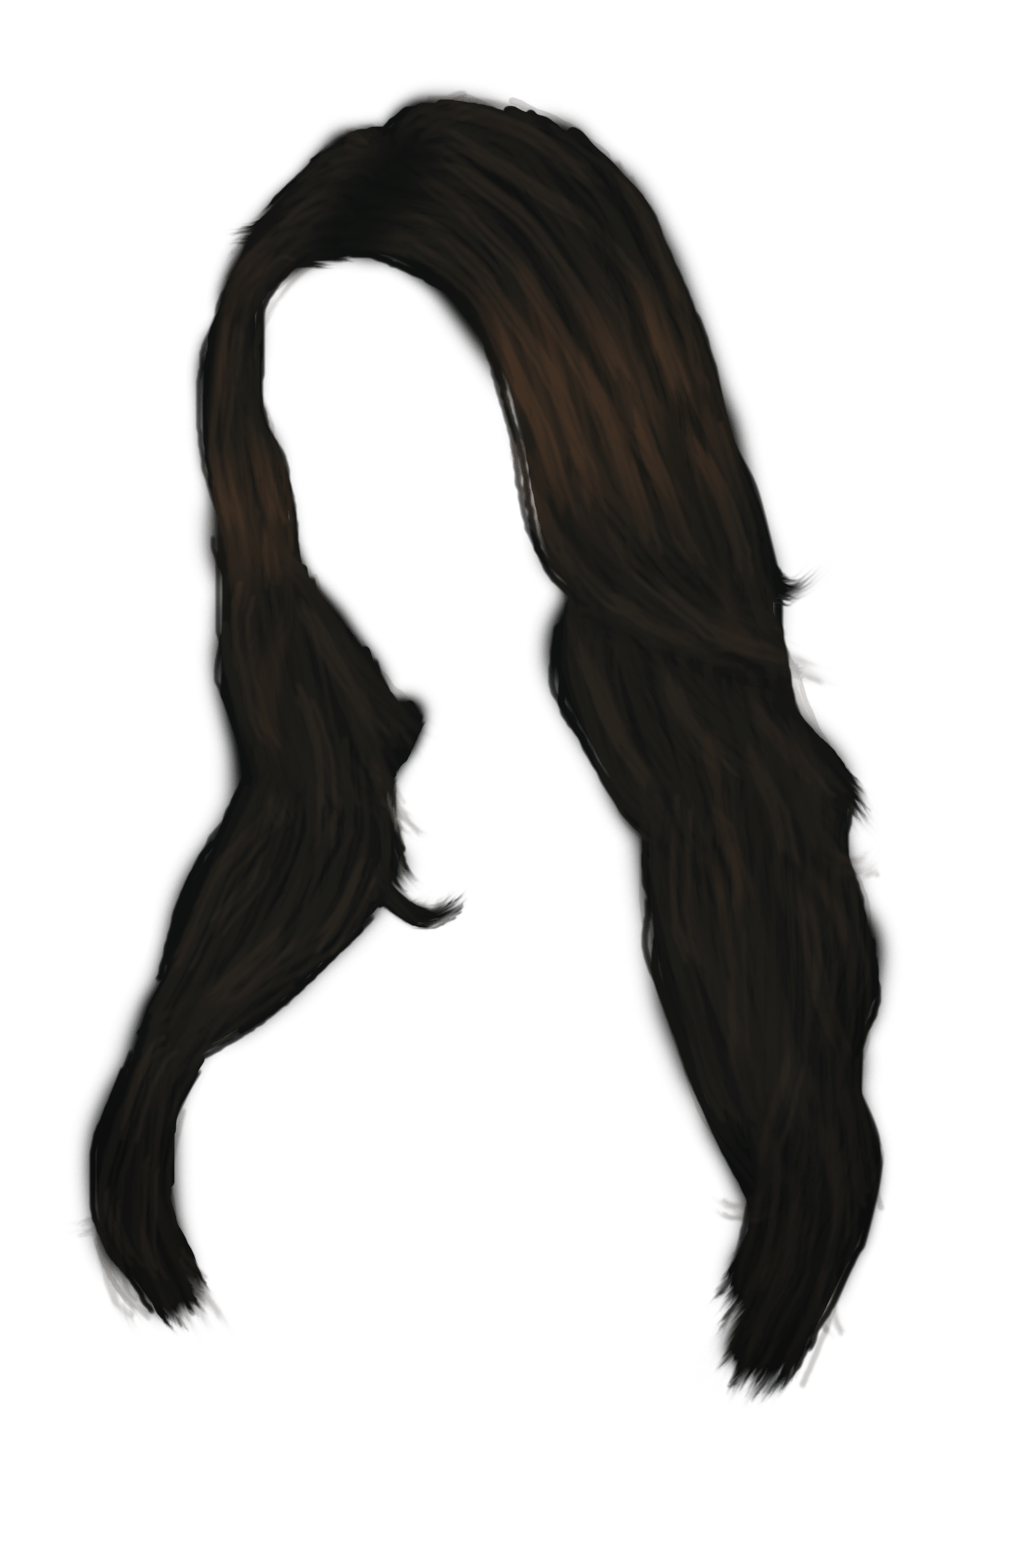 Imagen Transparente del pelo de la mujer